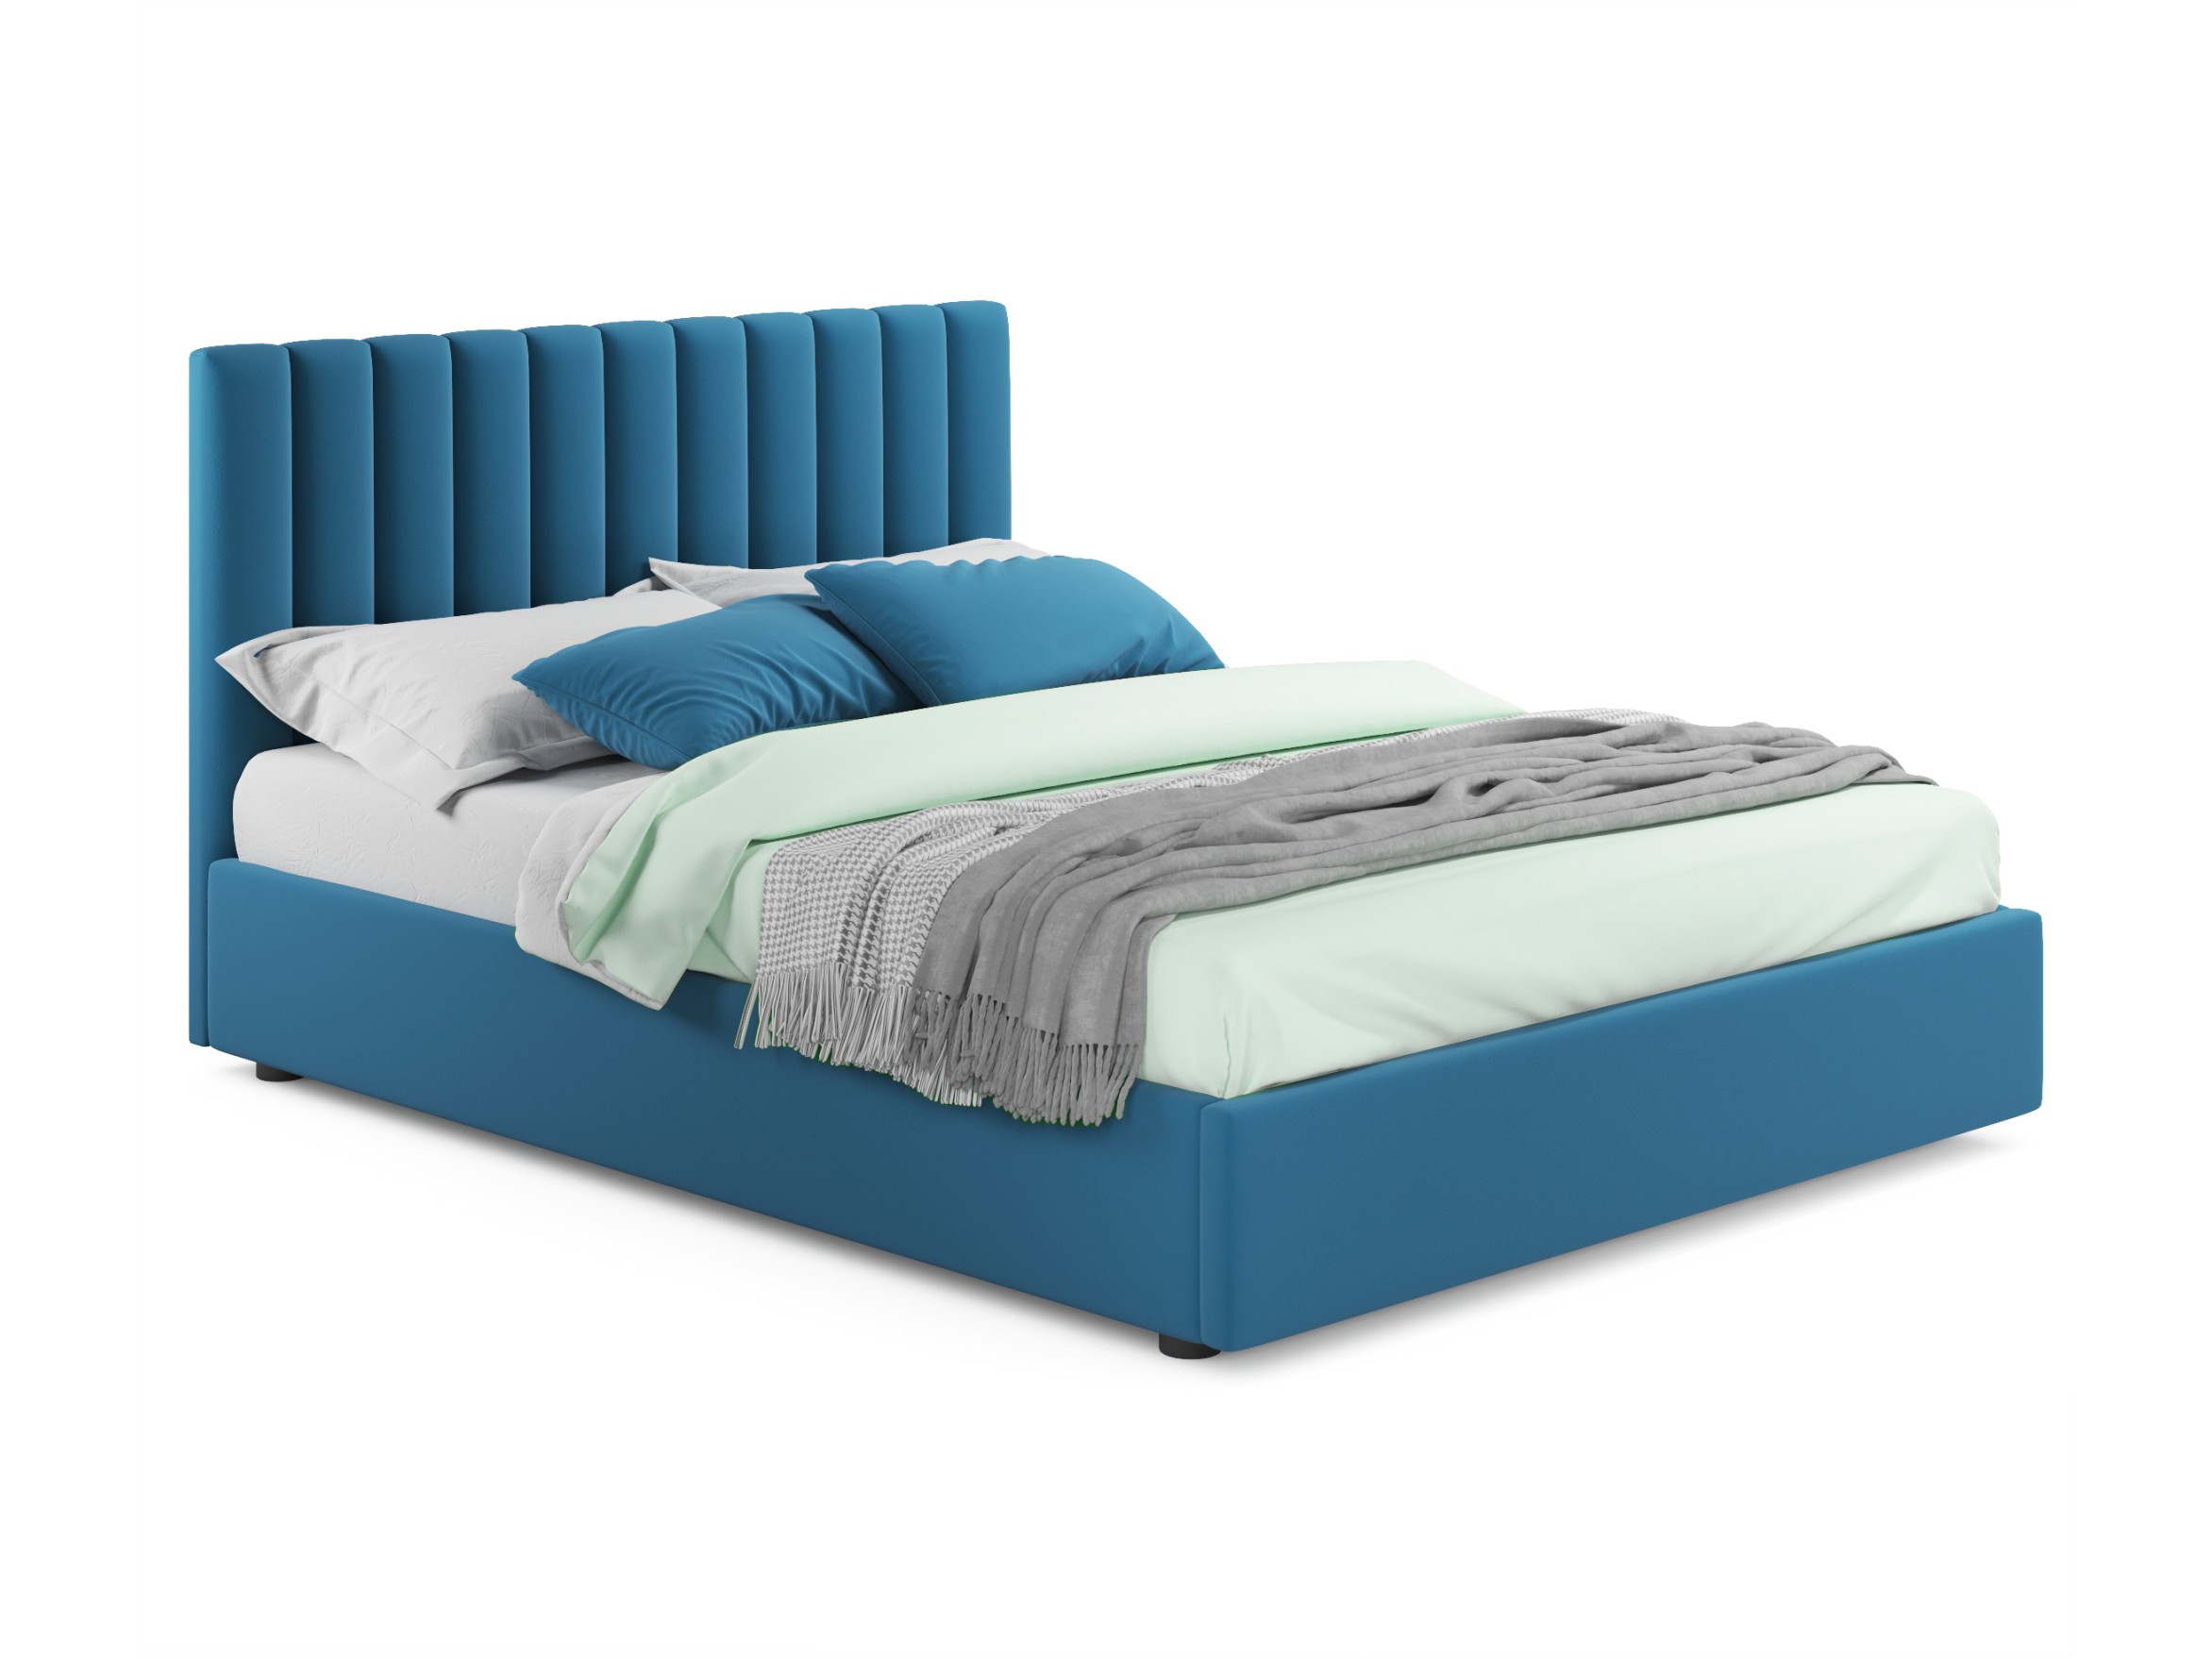 мягкая кровать olivia 1800 синяя с подъемным механизмом синий синий велюр дсп Мягкая кровать Olivia 1800 синяя с подъемным механизмом синий, Синий, Велюр, ДСП